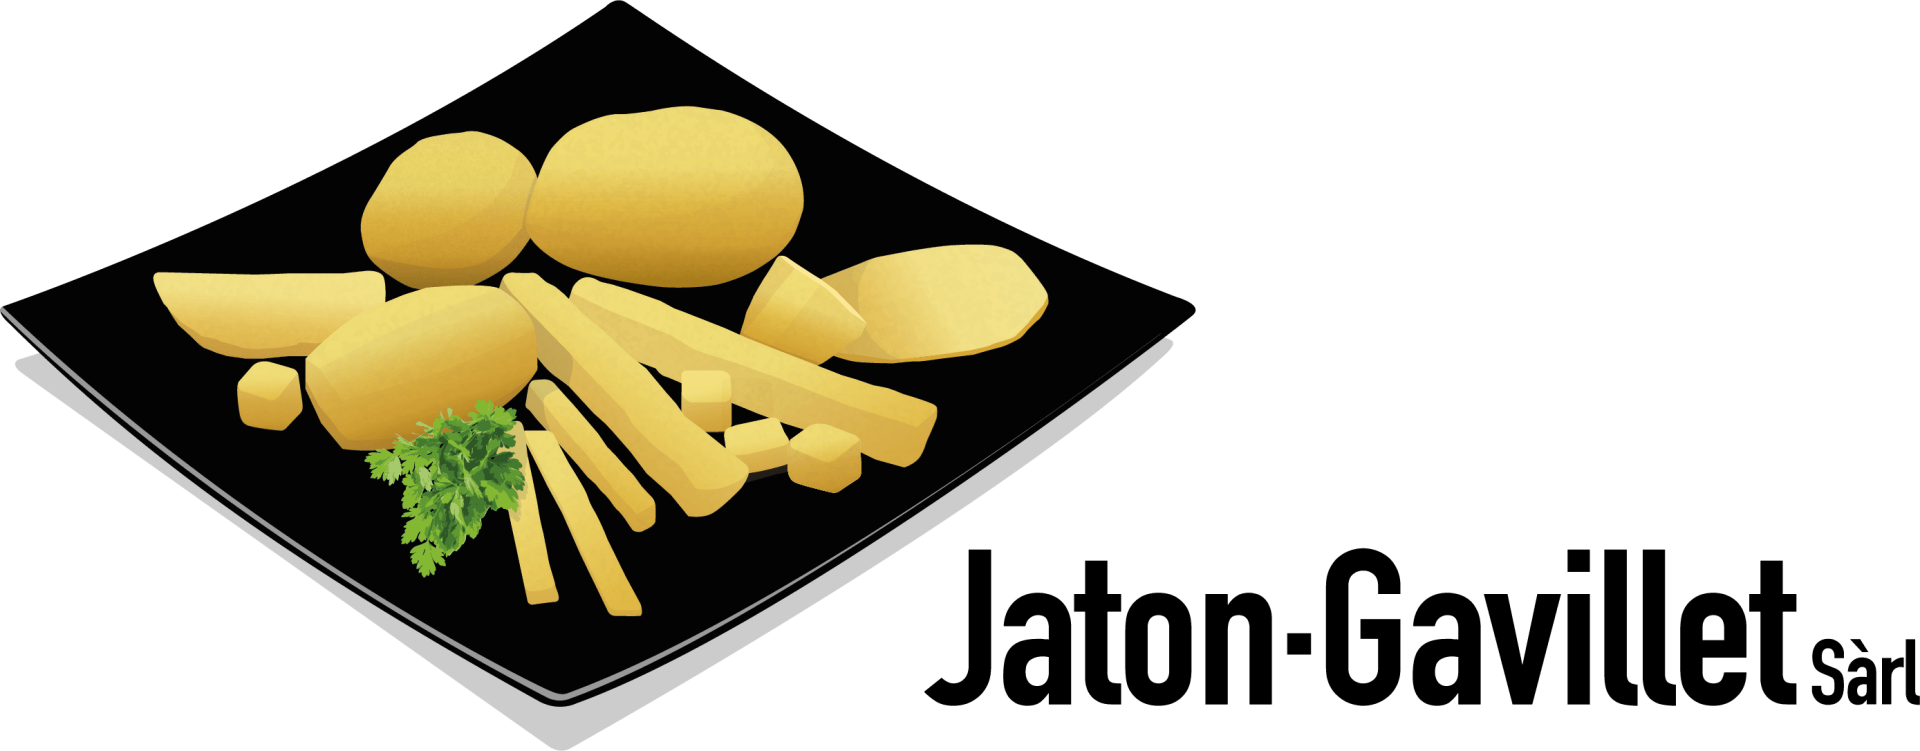 Jaton-gavillet